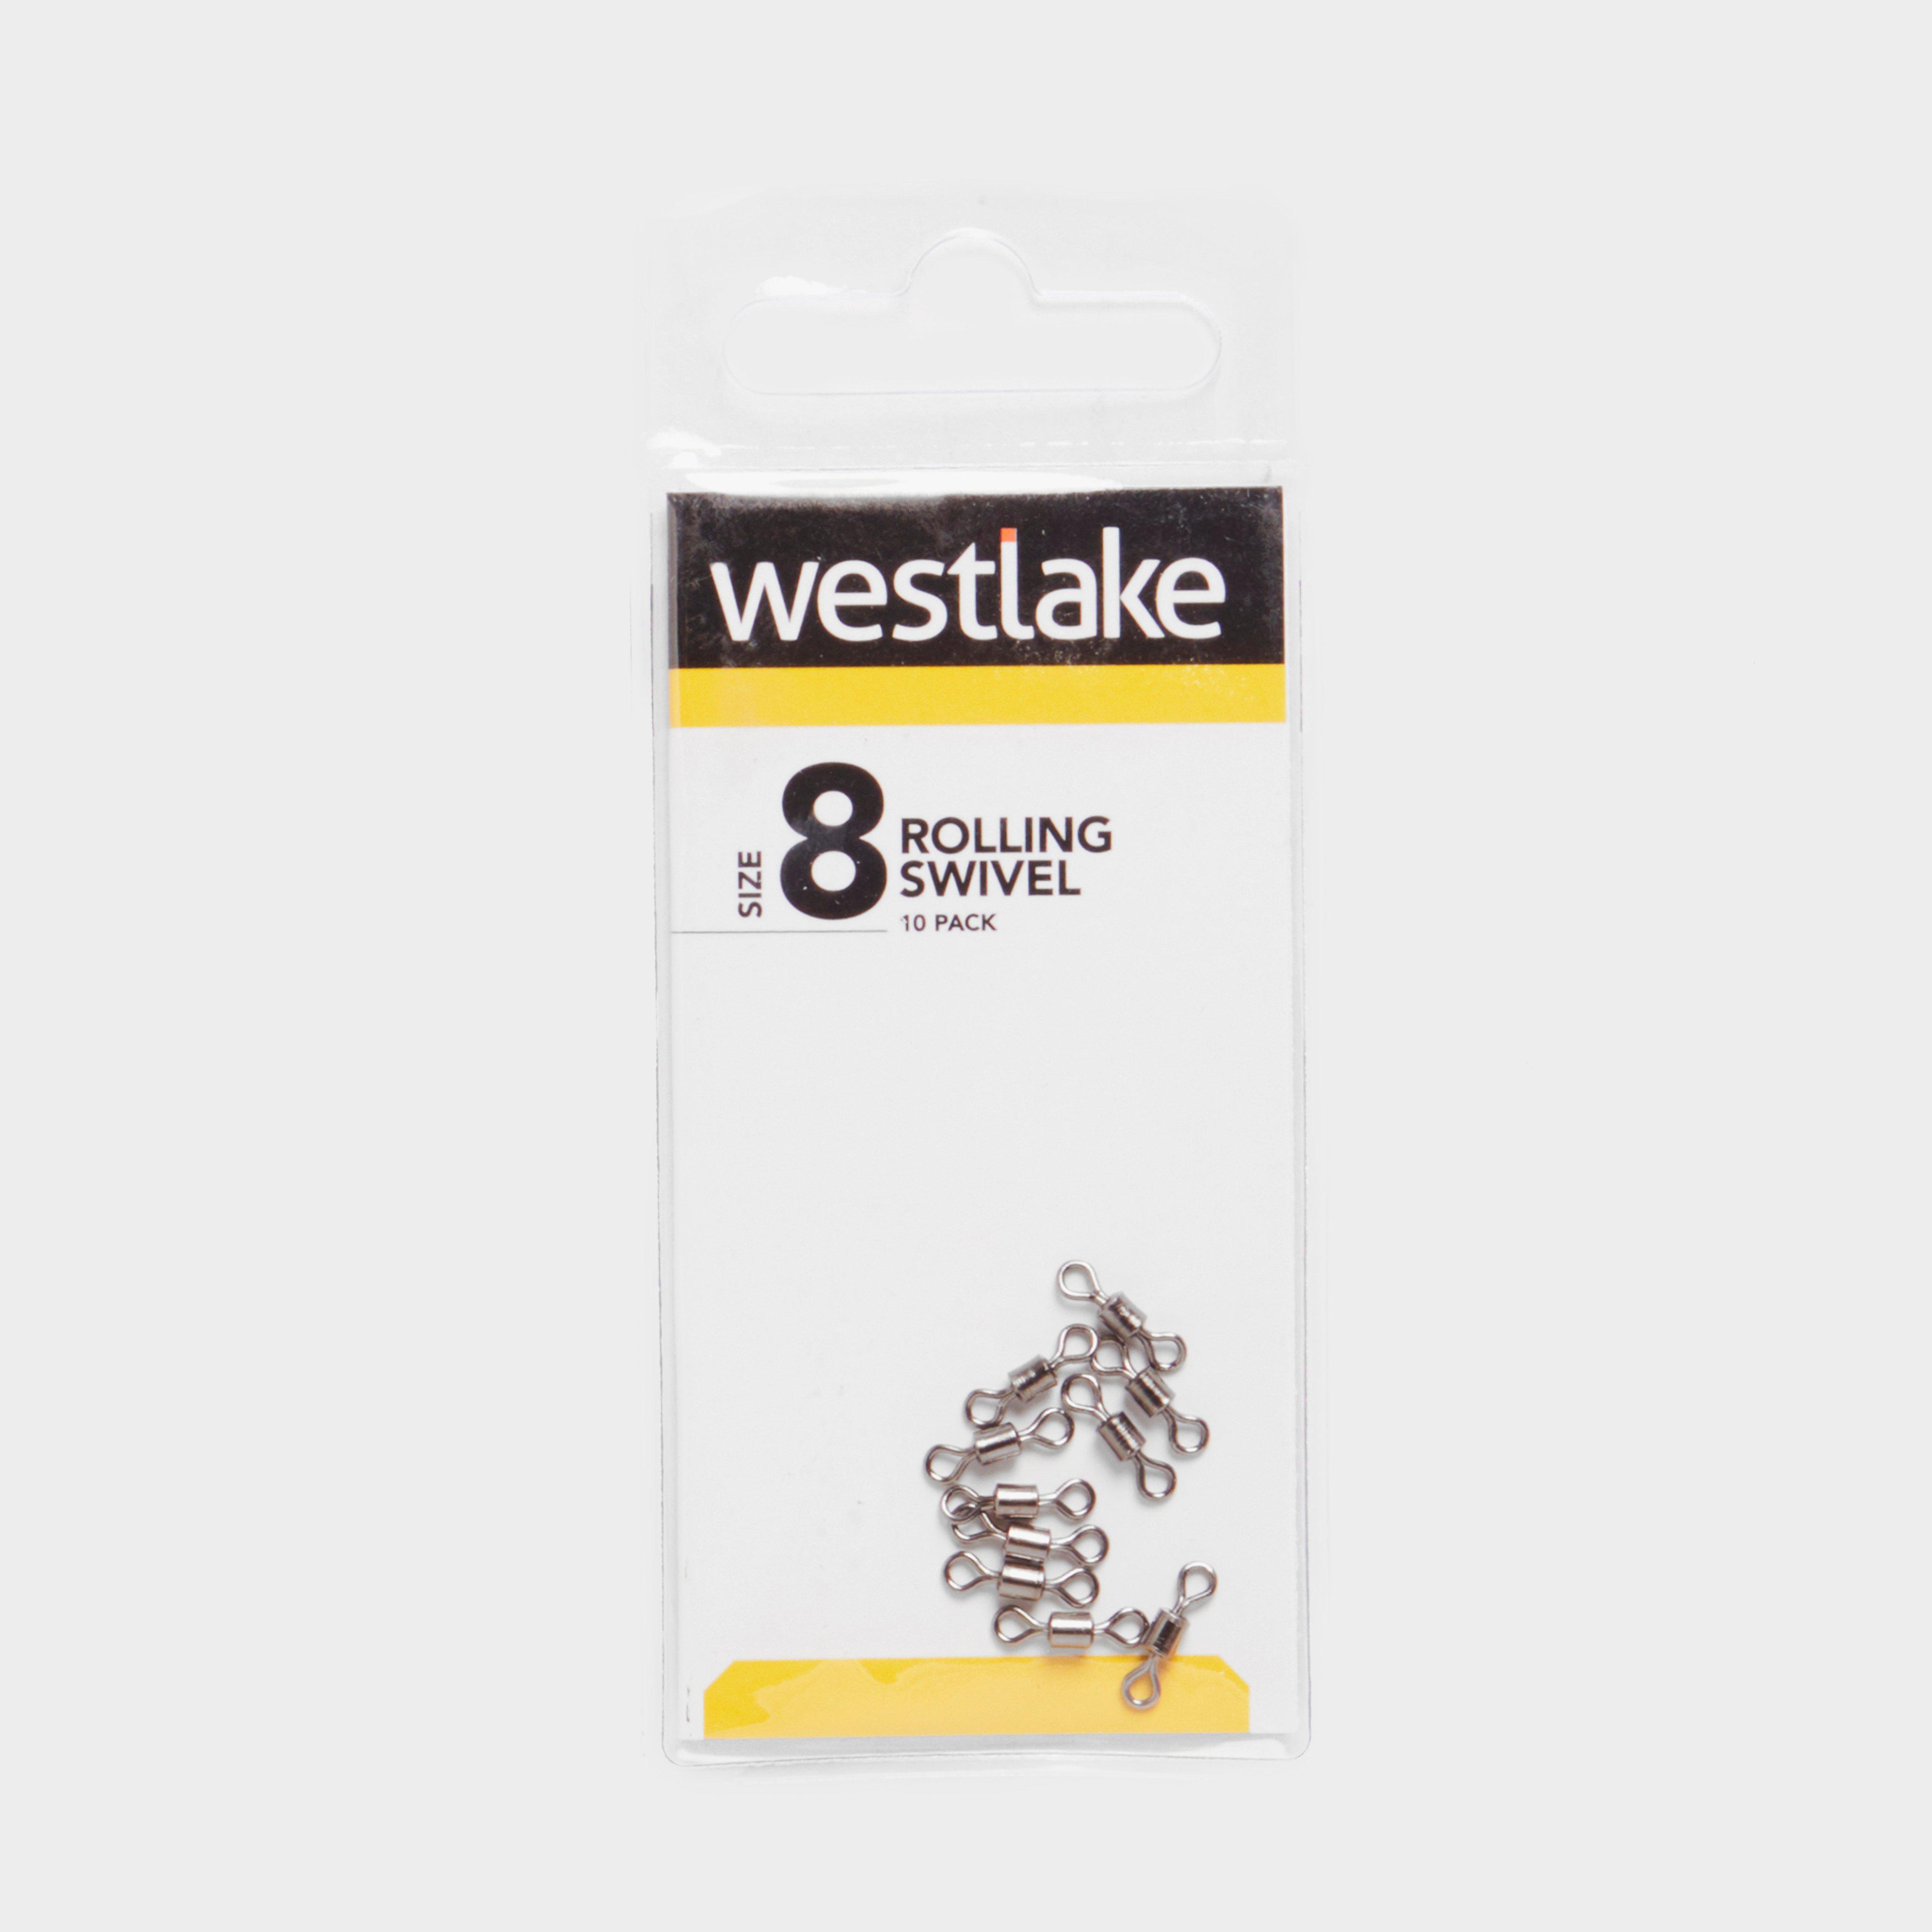 Westlake Rolling Swivel (size 8)